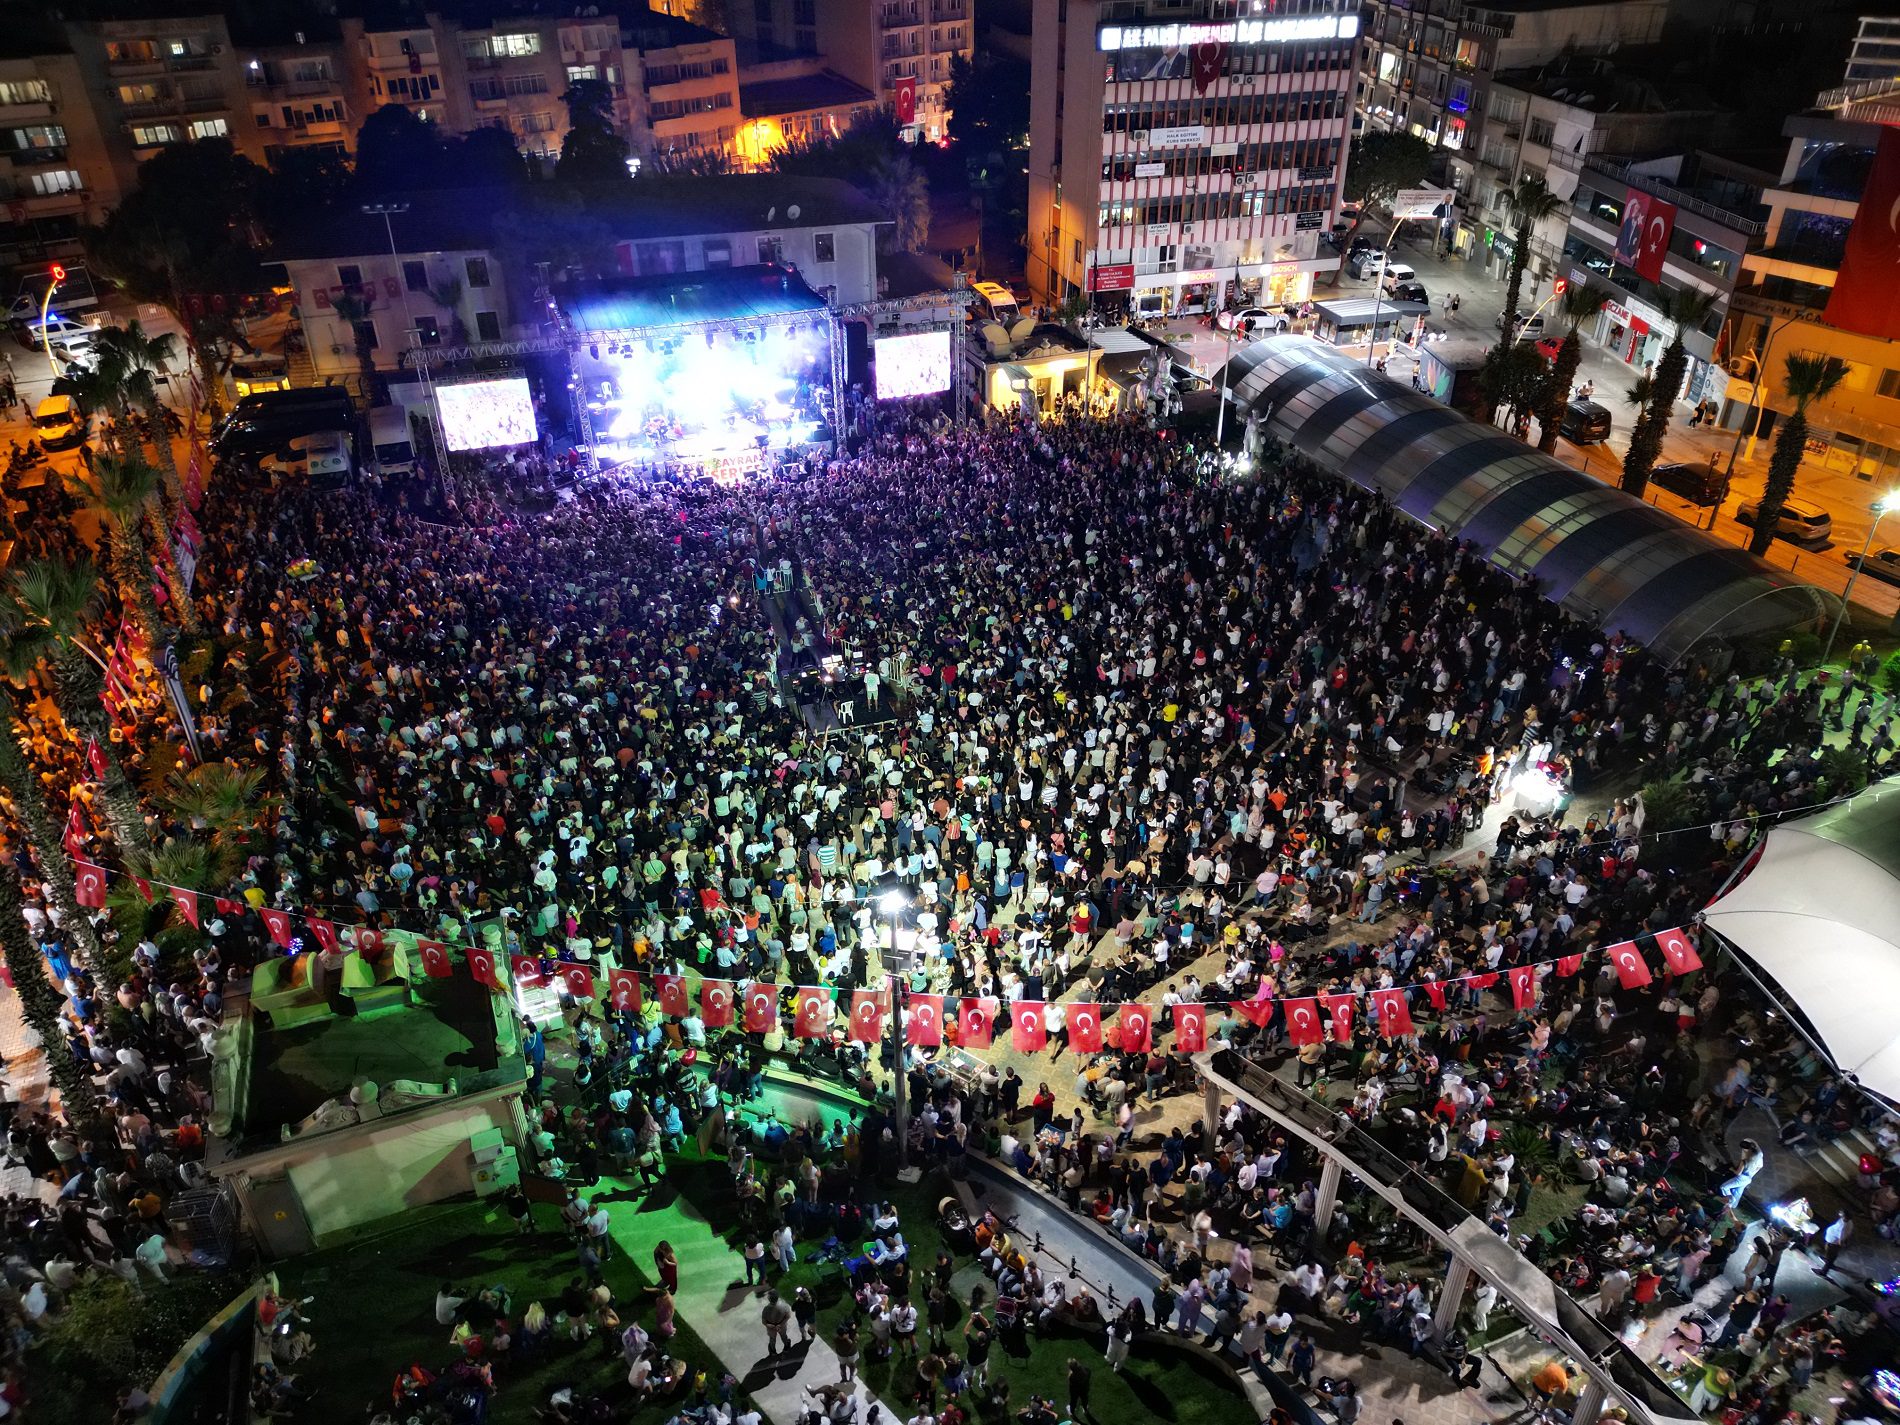 Konser 30 Ağustos Zafer Bayramı’nın 101. yıldönümü Menemen’de coşkuyla kutlandı. Menemen’in cadde ve sokakları kırmızı beyaza büründü. Menemen Belediyesi, filosuna kattığı 100 yeni araç ile Zafer Konvoyu düzenledi. Cumhuriyet Meydanı’nda gerçekleştirilen Hakan Altun ve Hüsnü Şenlendirici konserleri de vatandaşları mest etti. Konser öncesi 30 Ağustos’un önemine değinen Belediye Başkan Vekili Aydın Pehlivan, “Büyük Zafer’le birlikte bugün üzerinde özgürce yaşadığımız toprakların ebedi ve ezeli vatanımız olduğu bir kez daha tescil edilmiştir. Bu vatana dün de sahip çıktık, bugün de çıkıyoruz, yarın da çıkacağız. Ne Mutlu Türk’üm Diyene” dedi. Sanatçıları vatandaşların arasına eşi Filiz Pehlivan ile birlikte izleyen Aydın Pehlivan’ın eşiyle dansı da büyük alkış aldı.